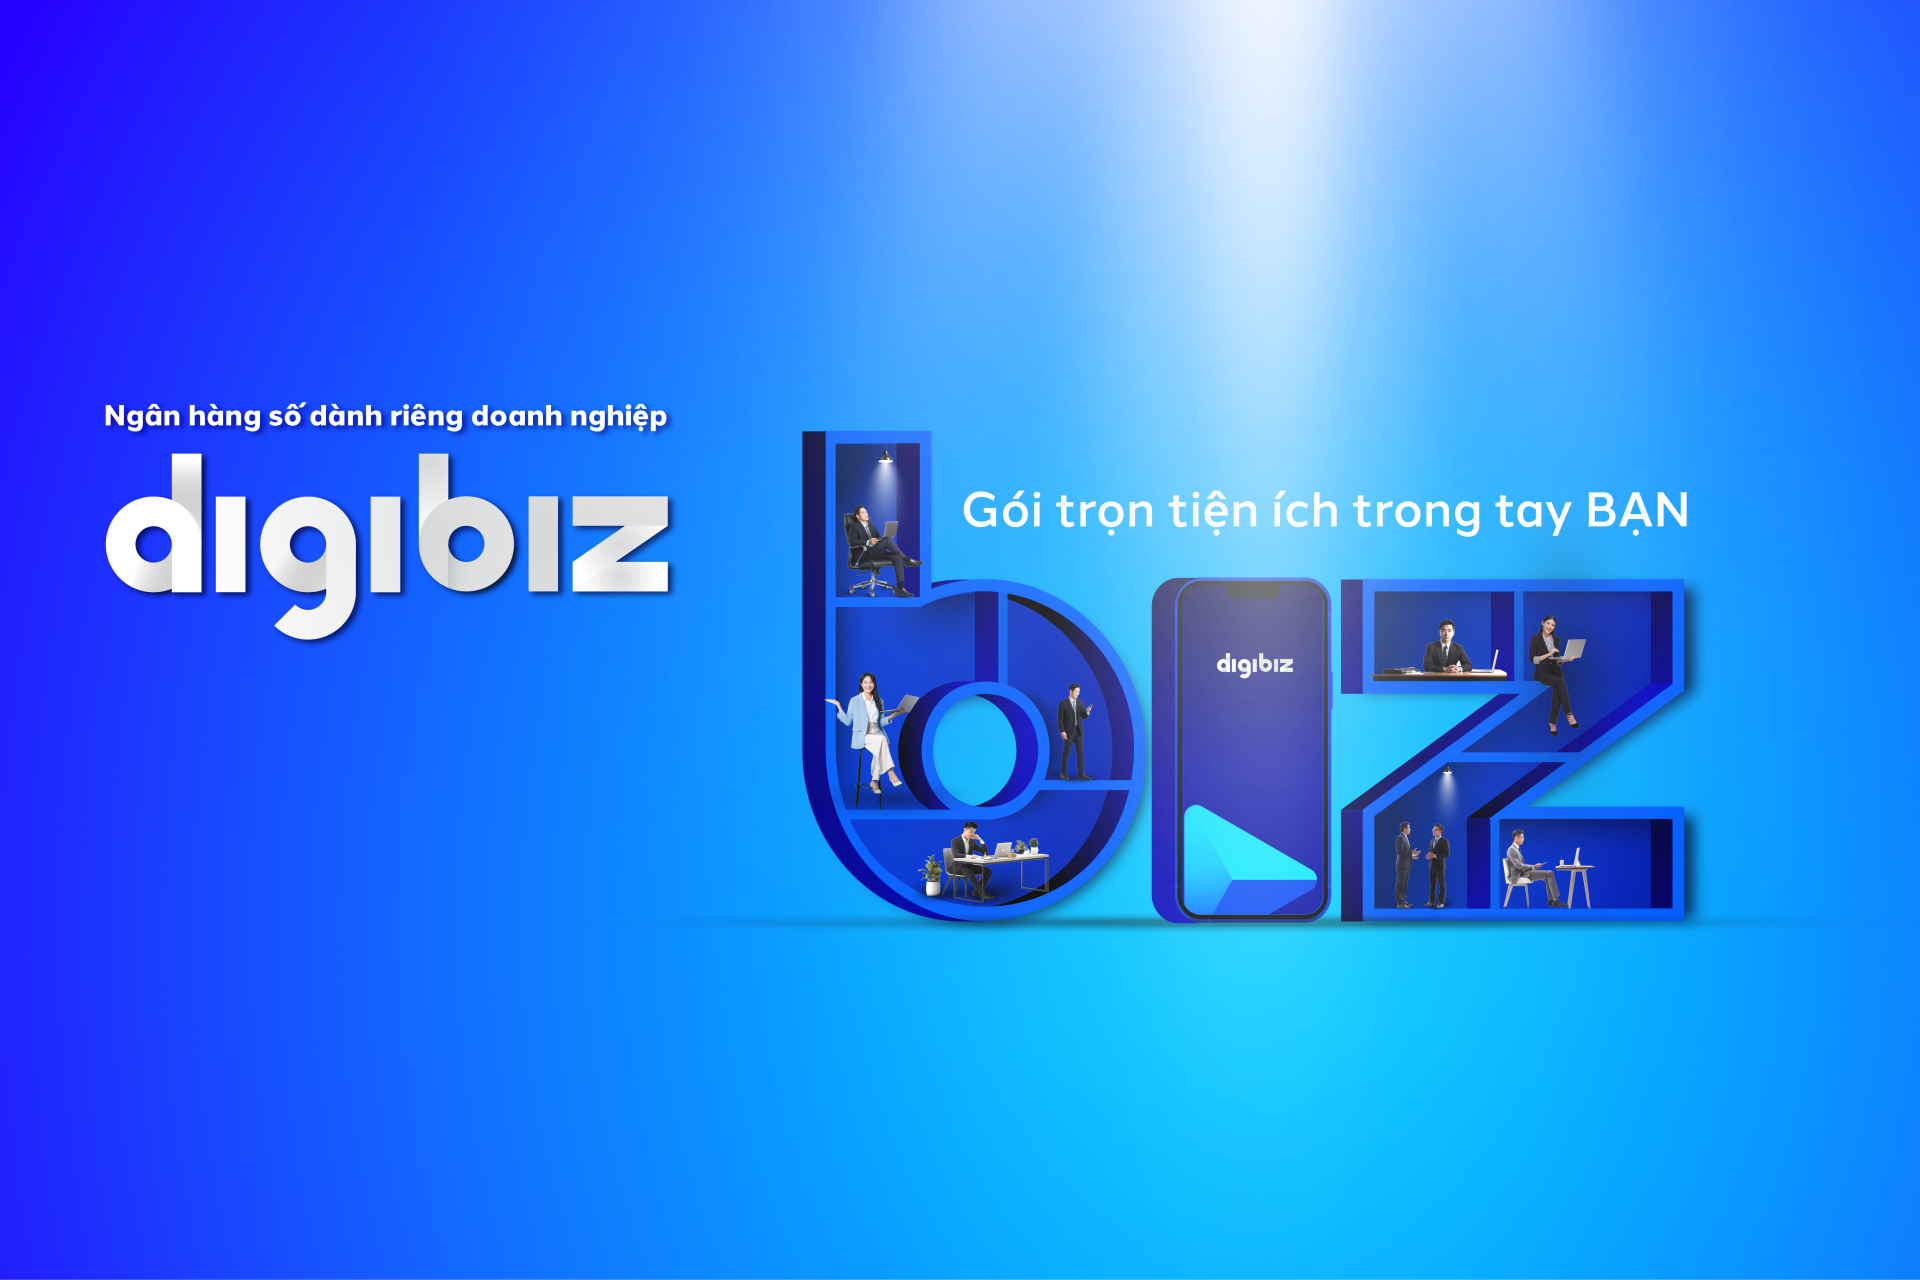 BVBank launches 'Digibiz'